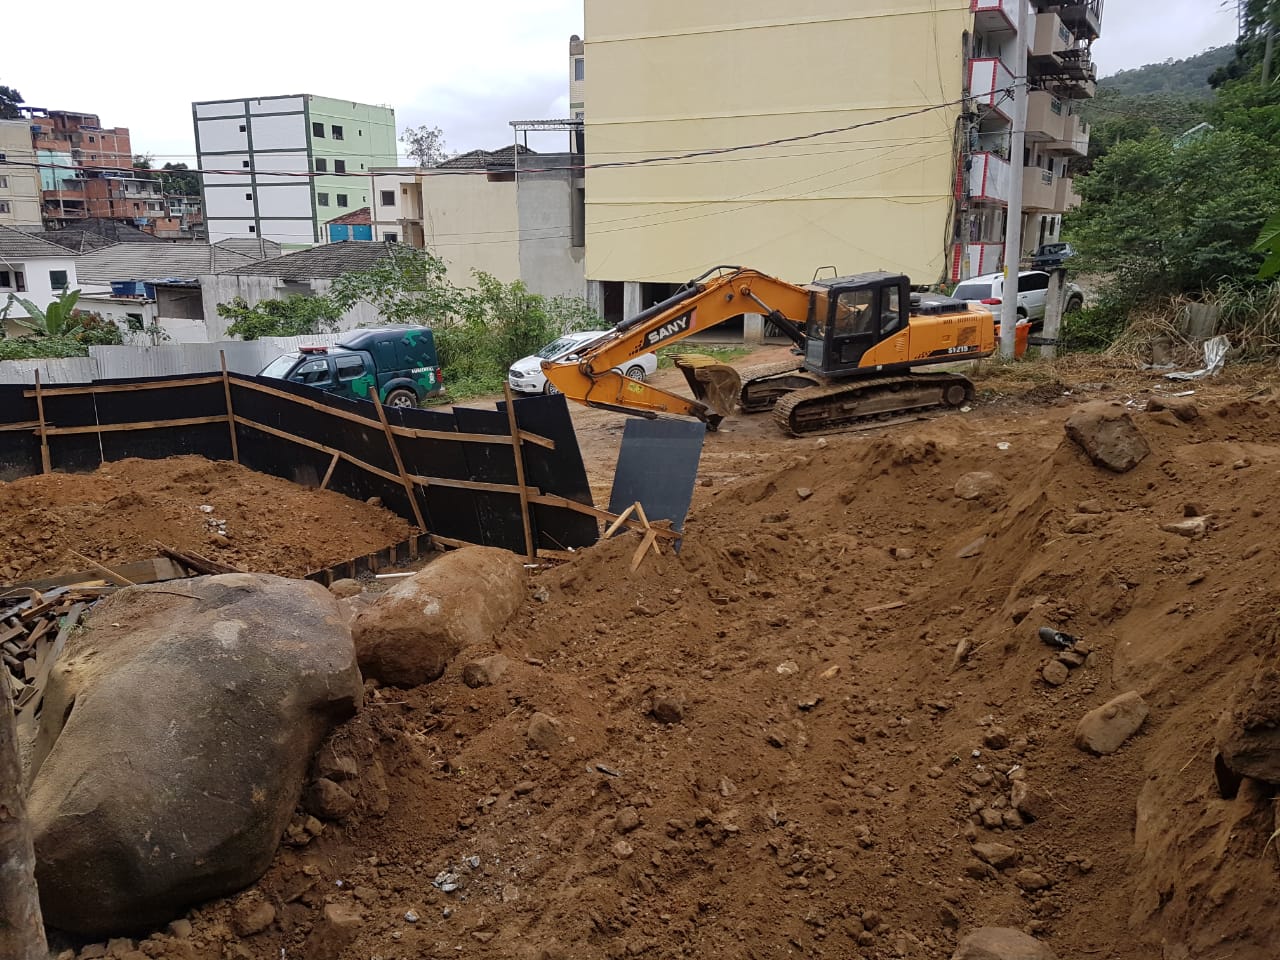 Polícia apreende escavadeira em terreno com mais de 1800 metros quadrados de área degradada na Zona Oeste